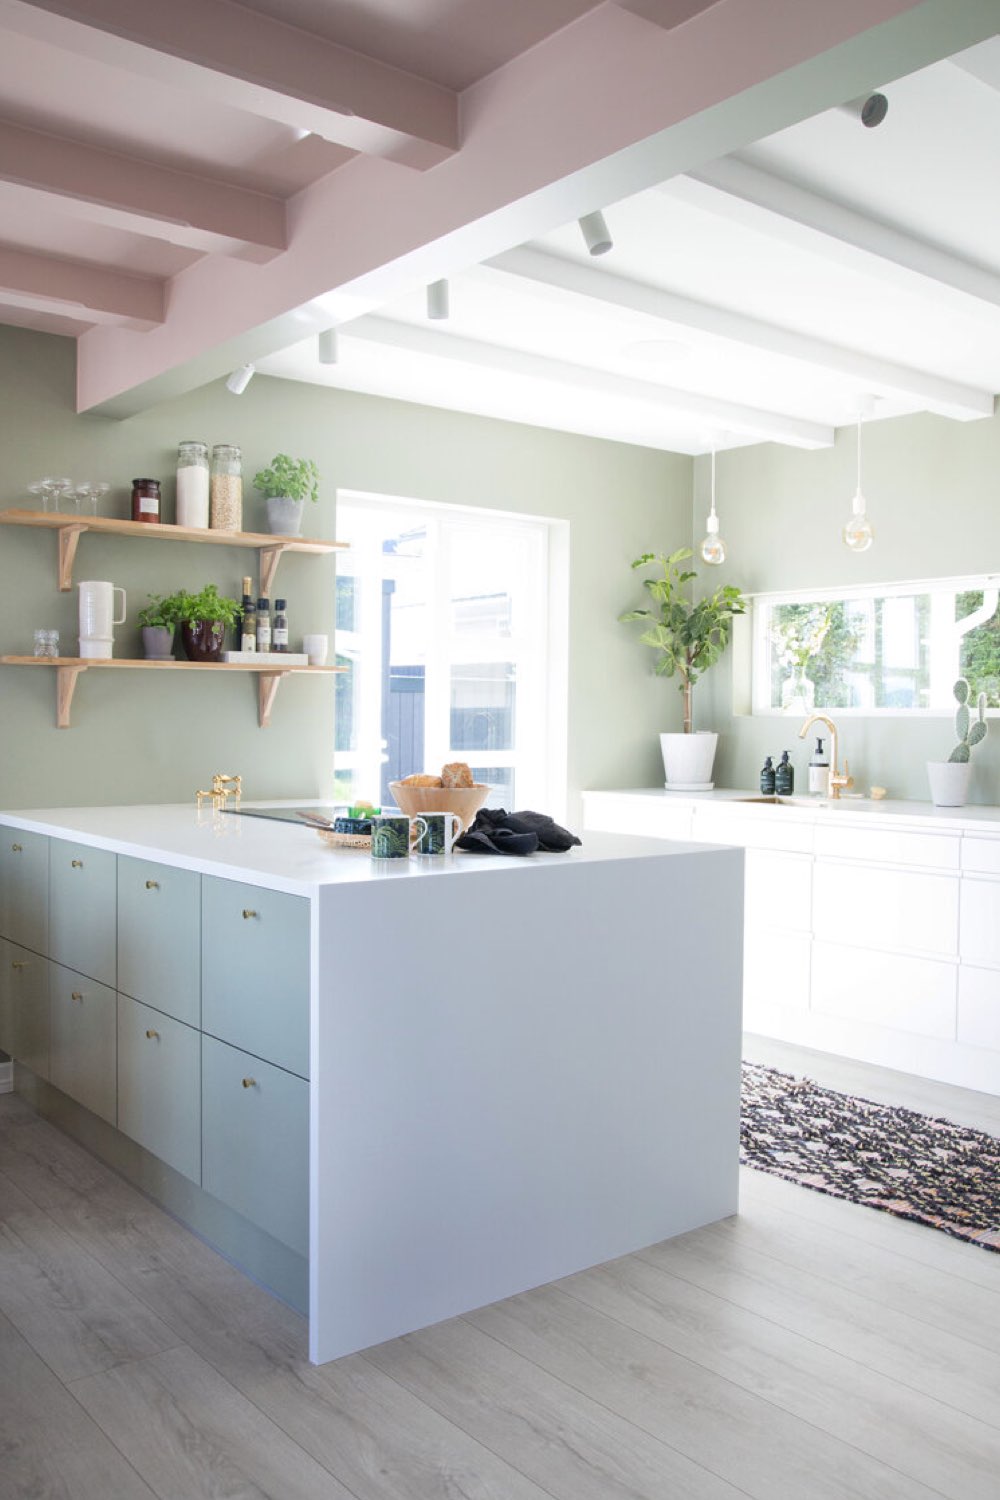 interieur deco peinture pastel cuisine ouverte avec îlot blanc et bleu mur vert sauge plafond rose espace lumineux